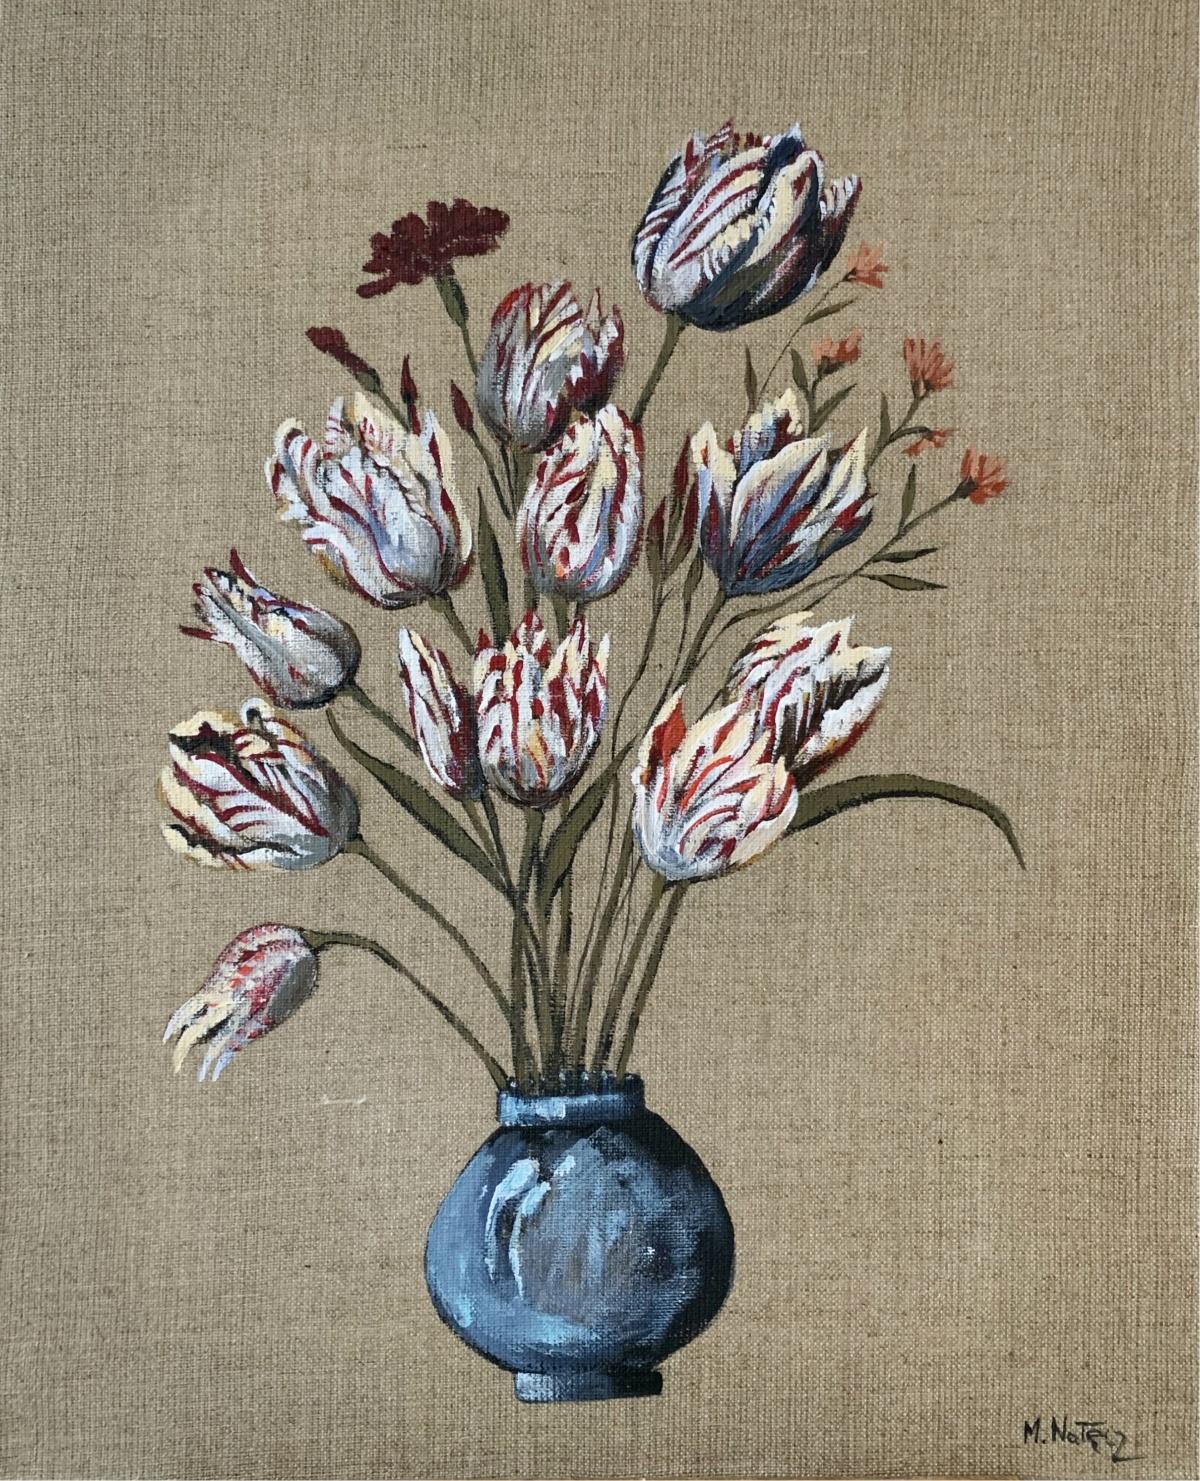 Tulips - Peinture acrylique figurative, réaliste, couleurs vibrantes, nature morte